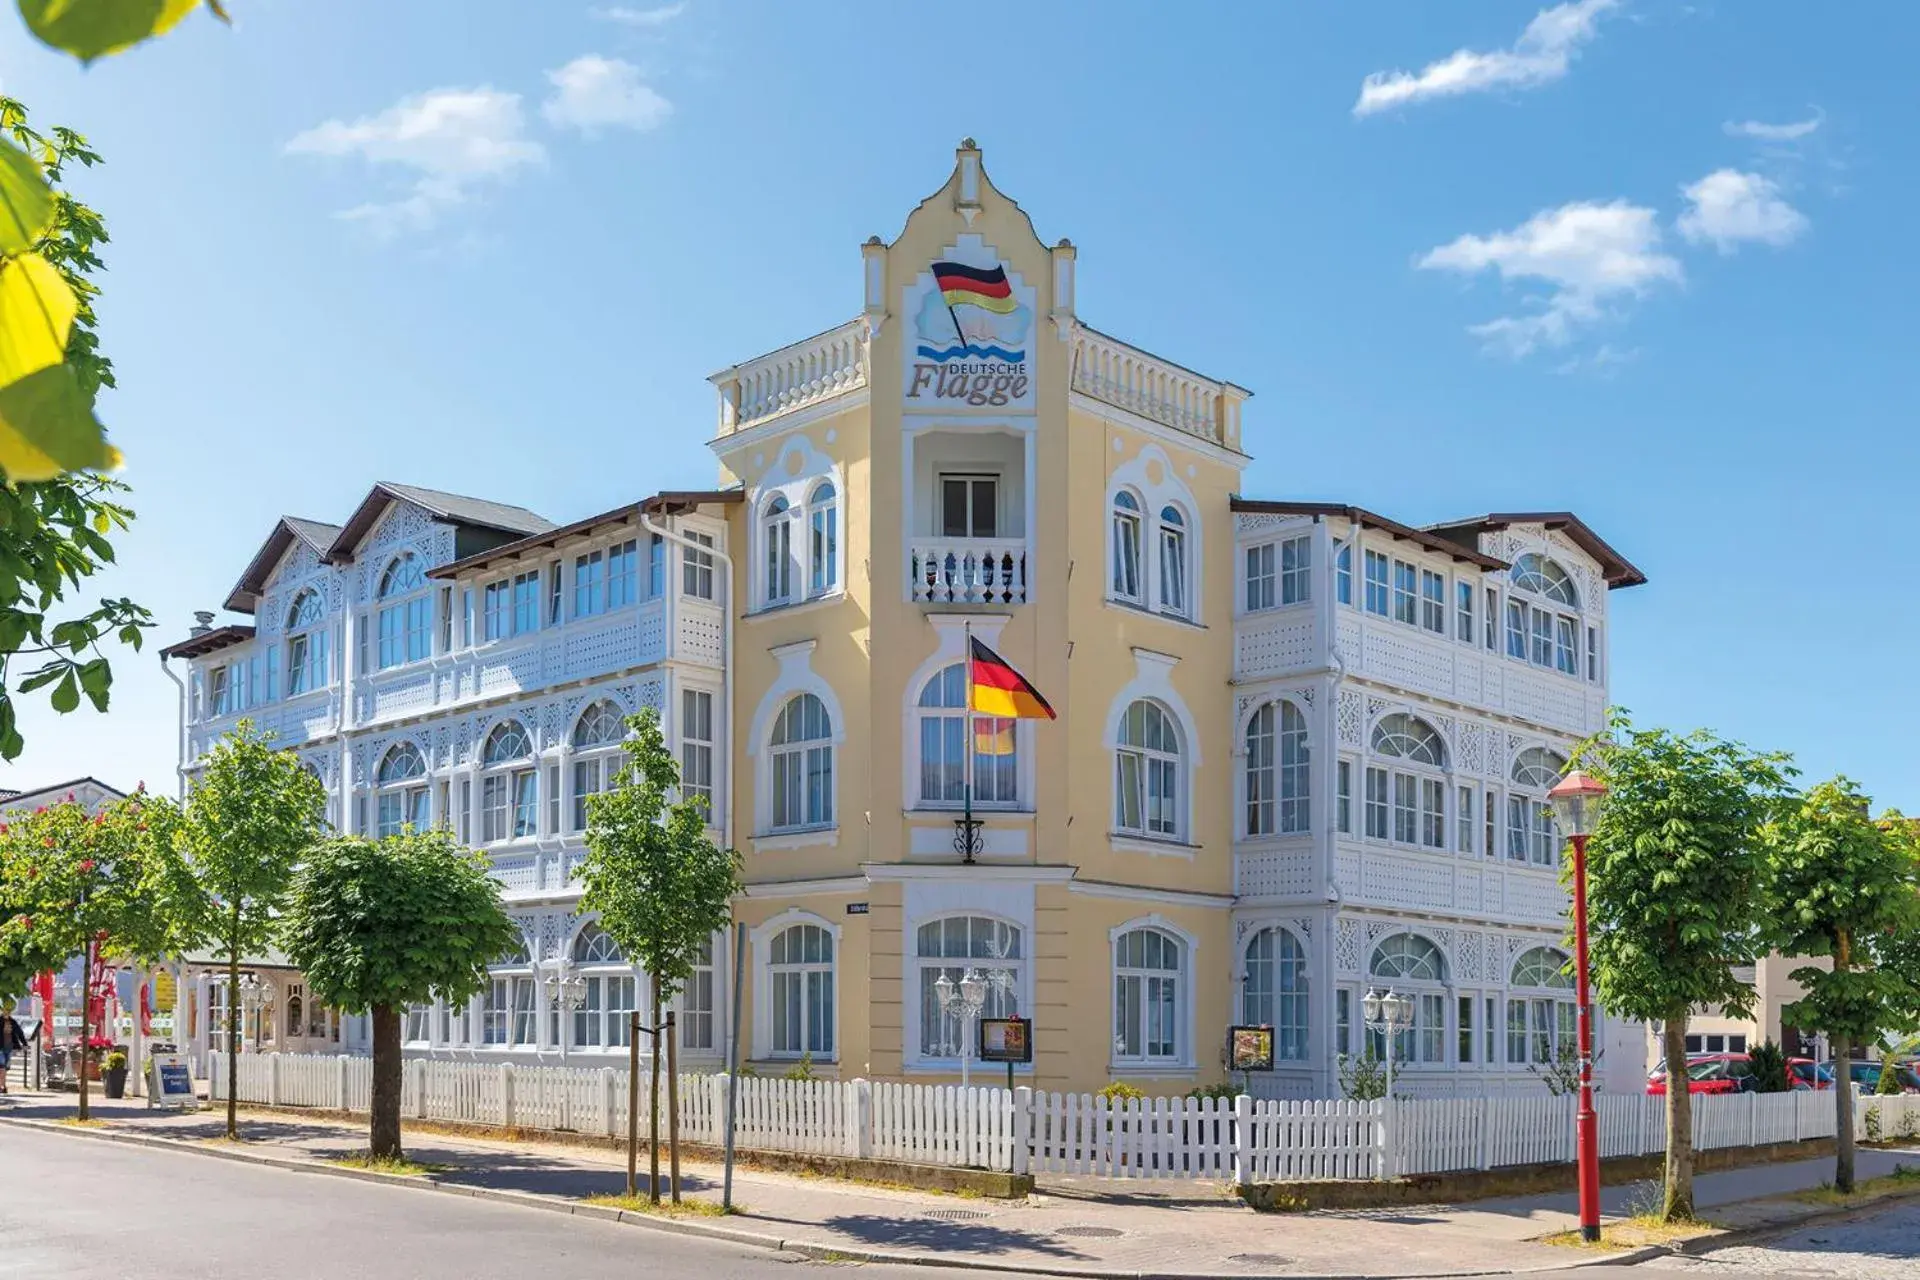 Property building in Deutsche Flagge Hotel